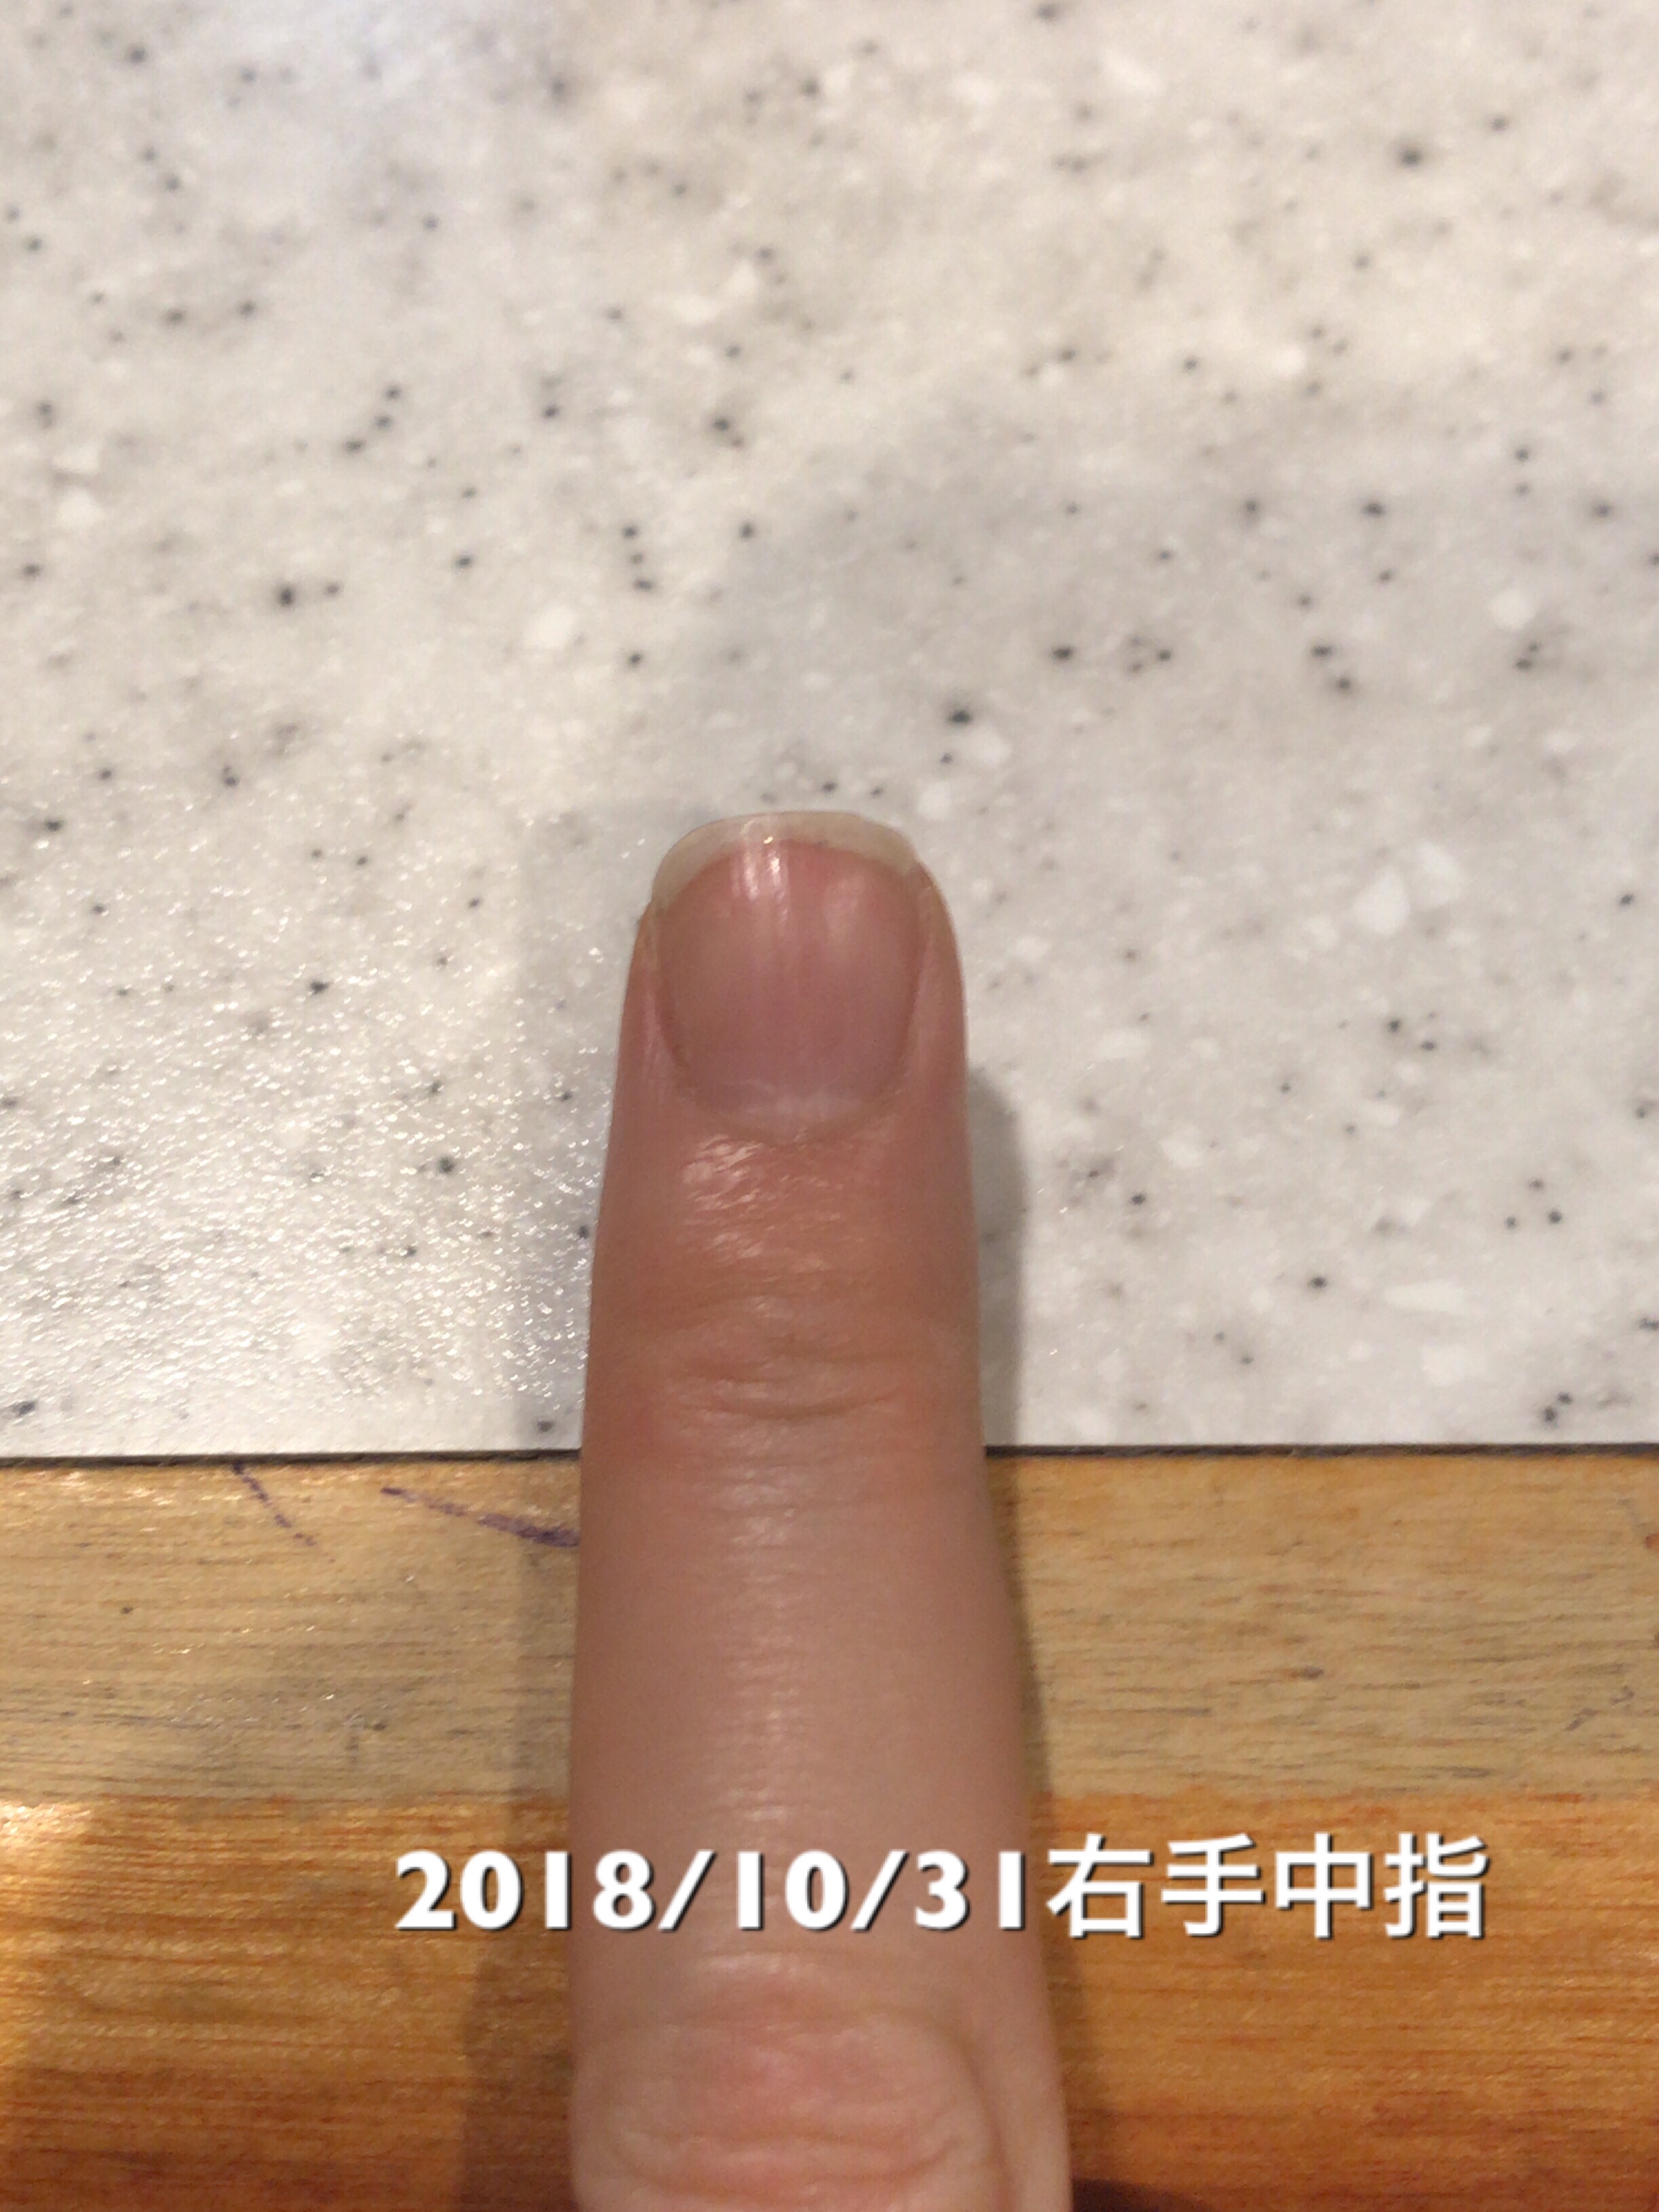 右手中指は、10日前との比較で、ネイルベッドが2mmの成長。